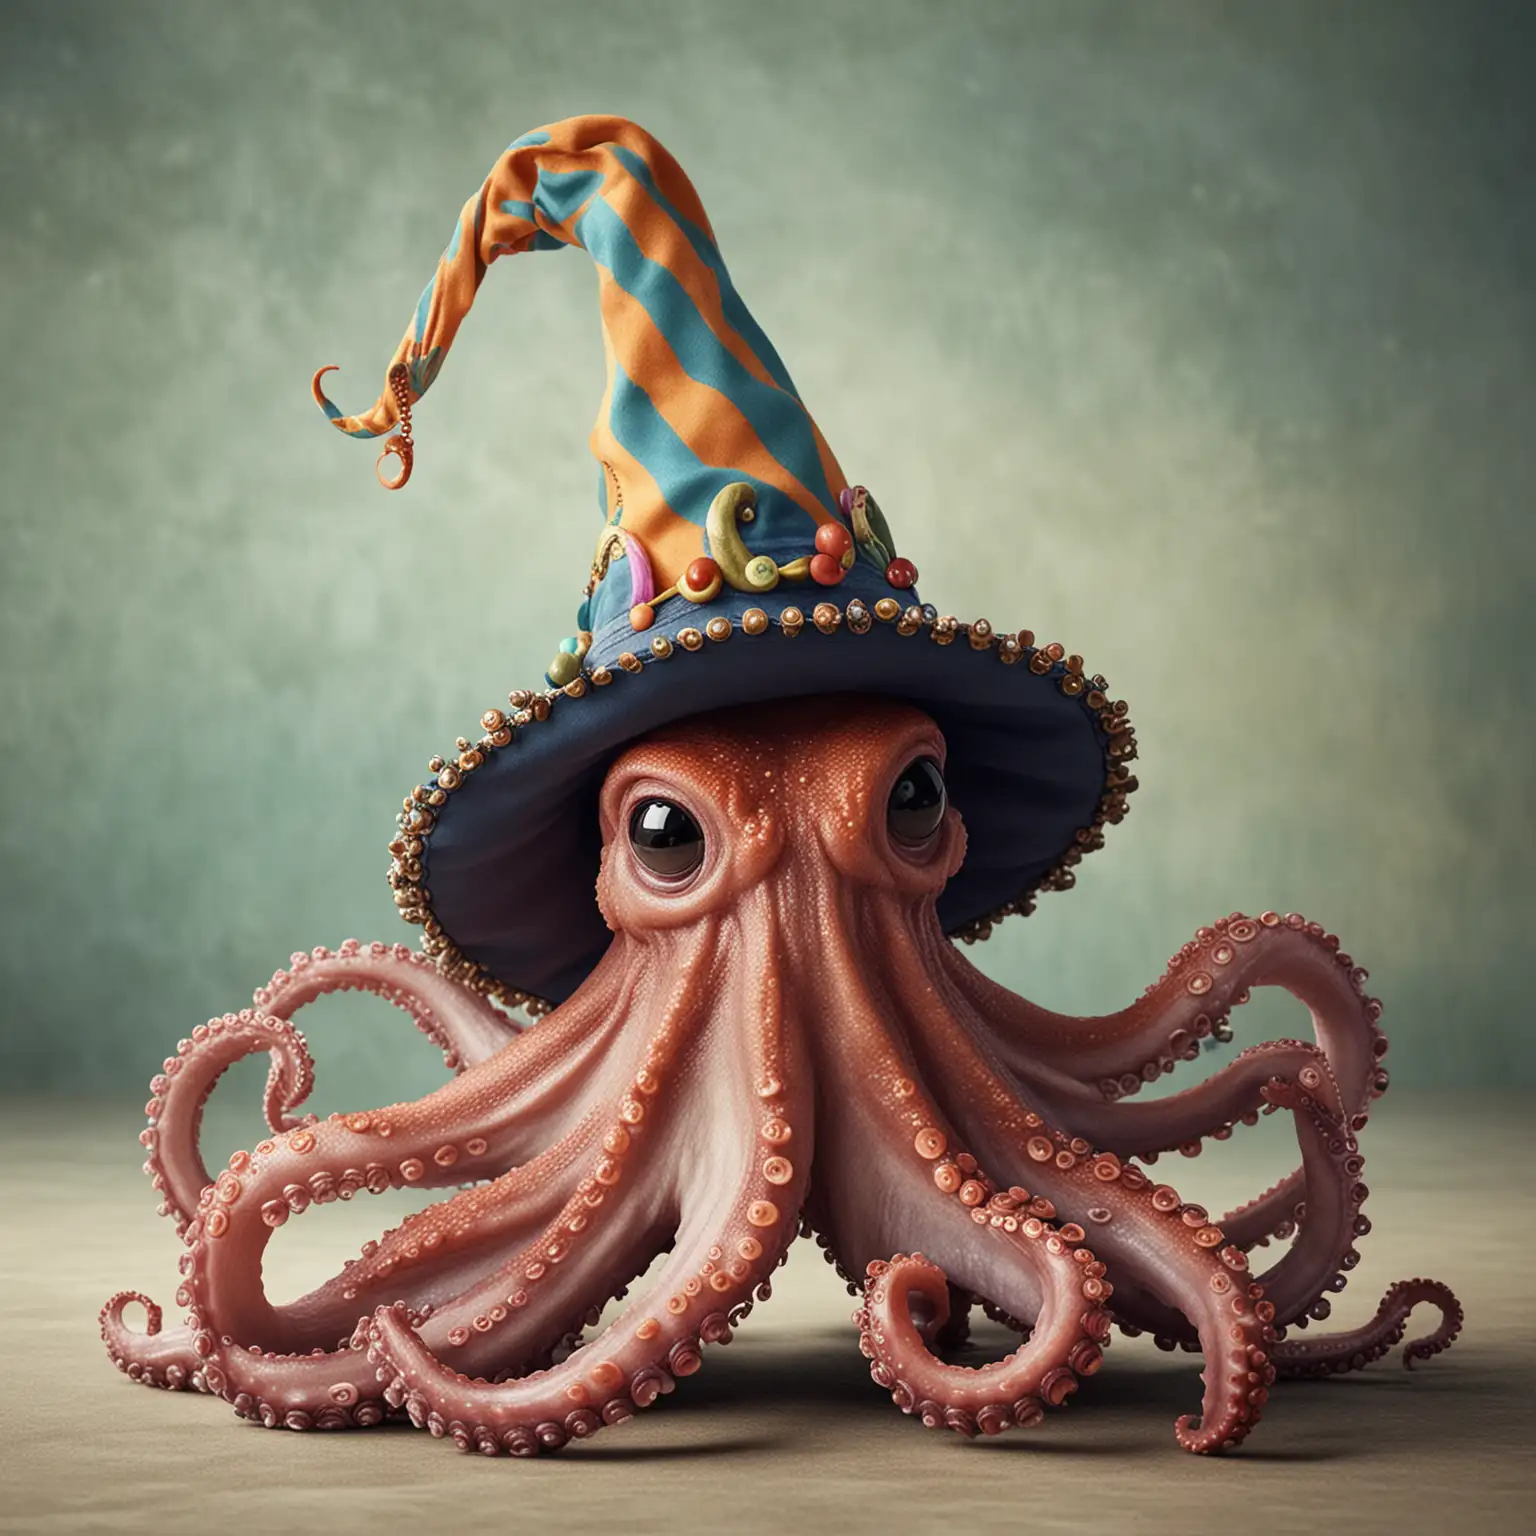 octopus wearing a jester hat
